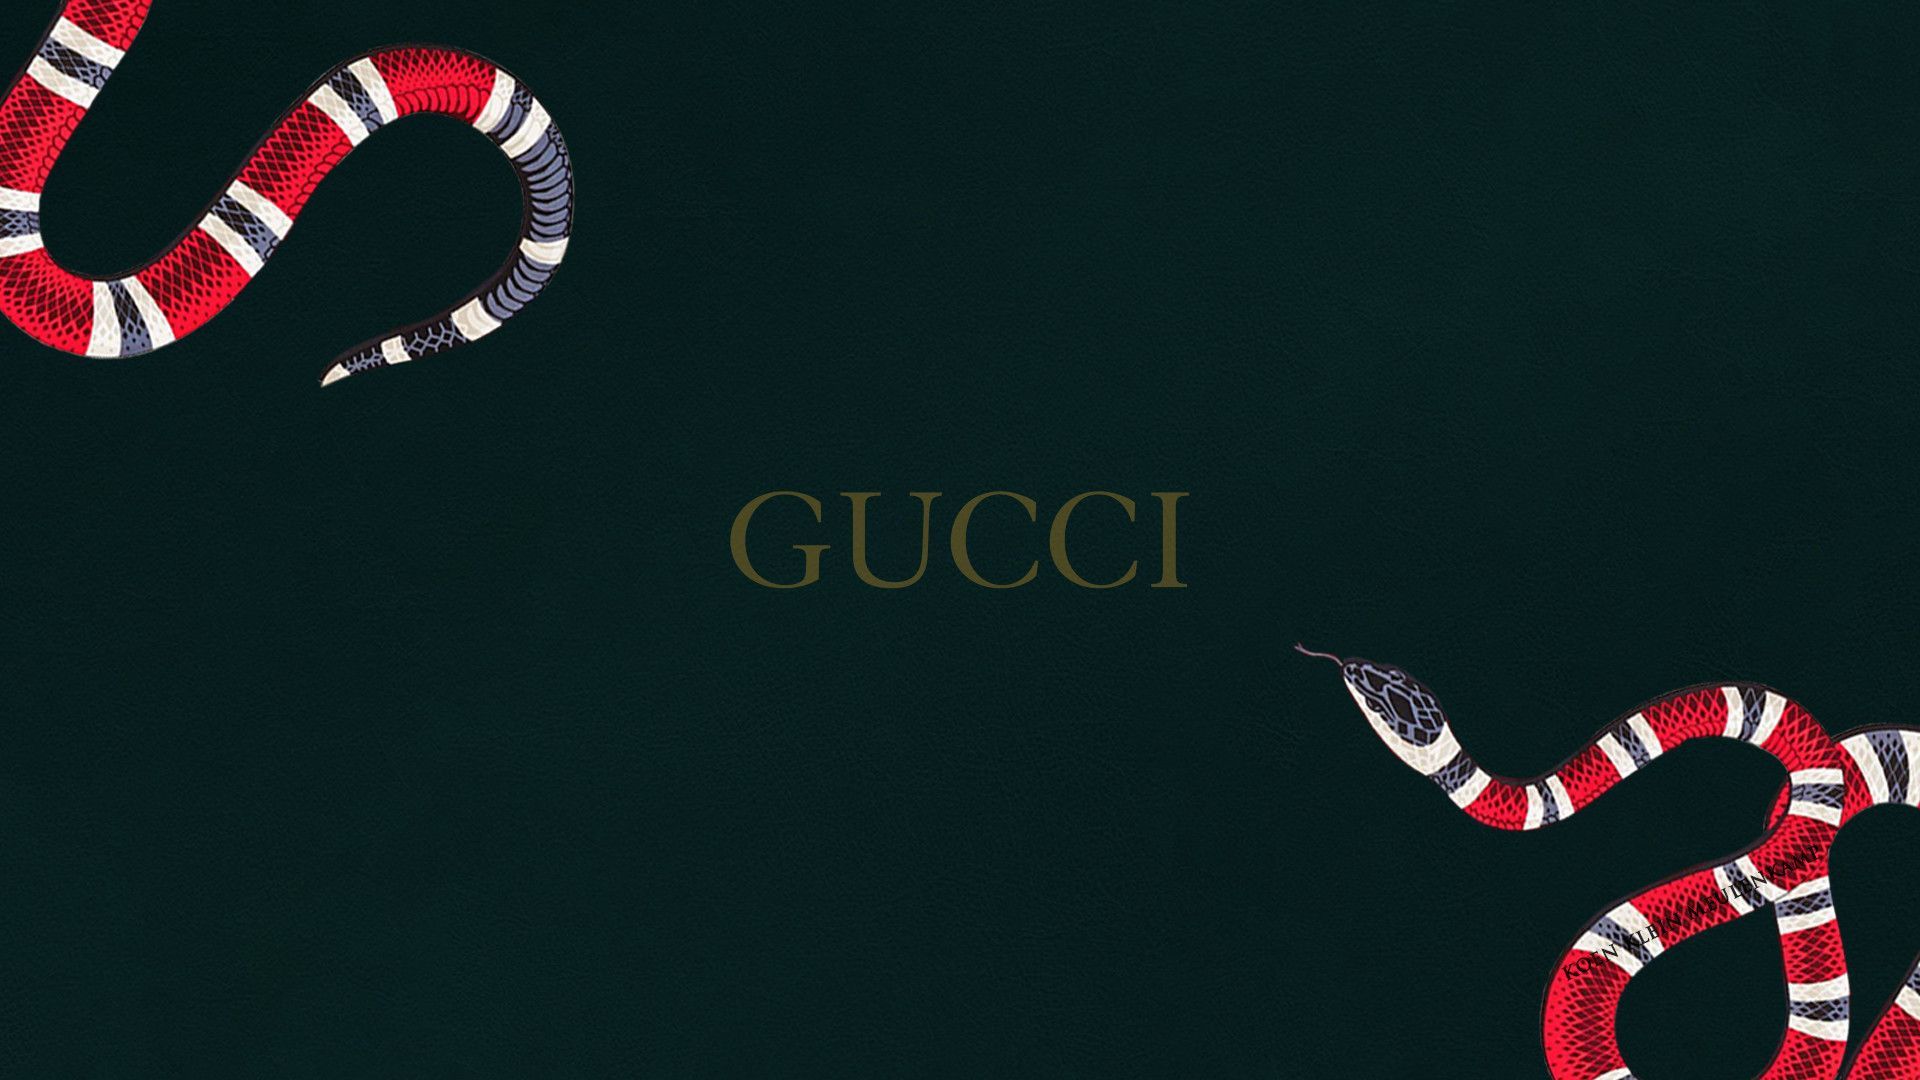 15+] Supreme Gucci Wallpapers - WallpaperSafari